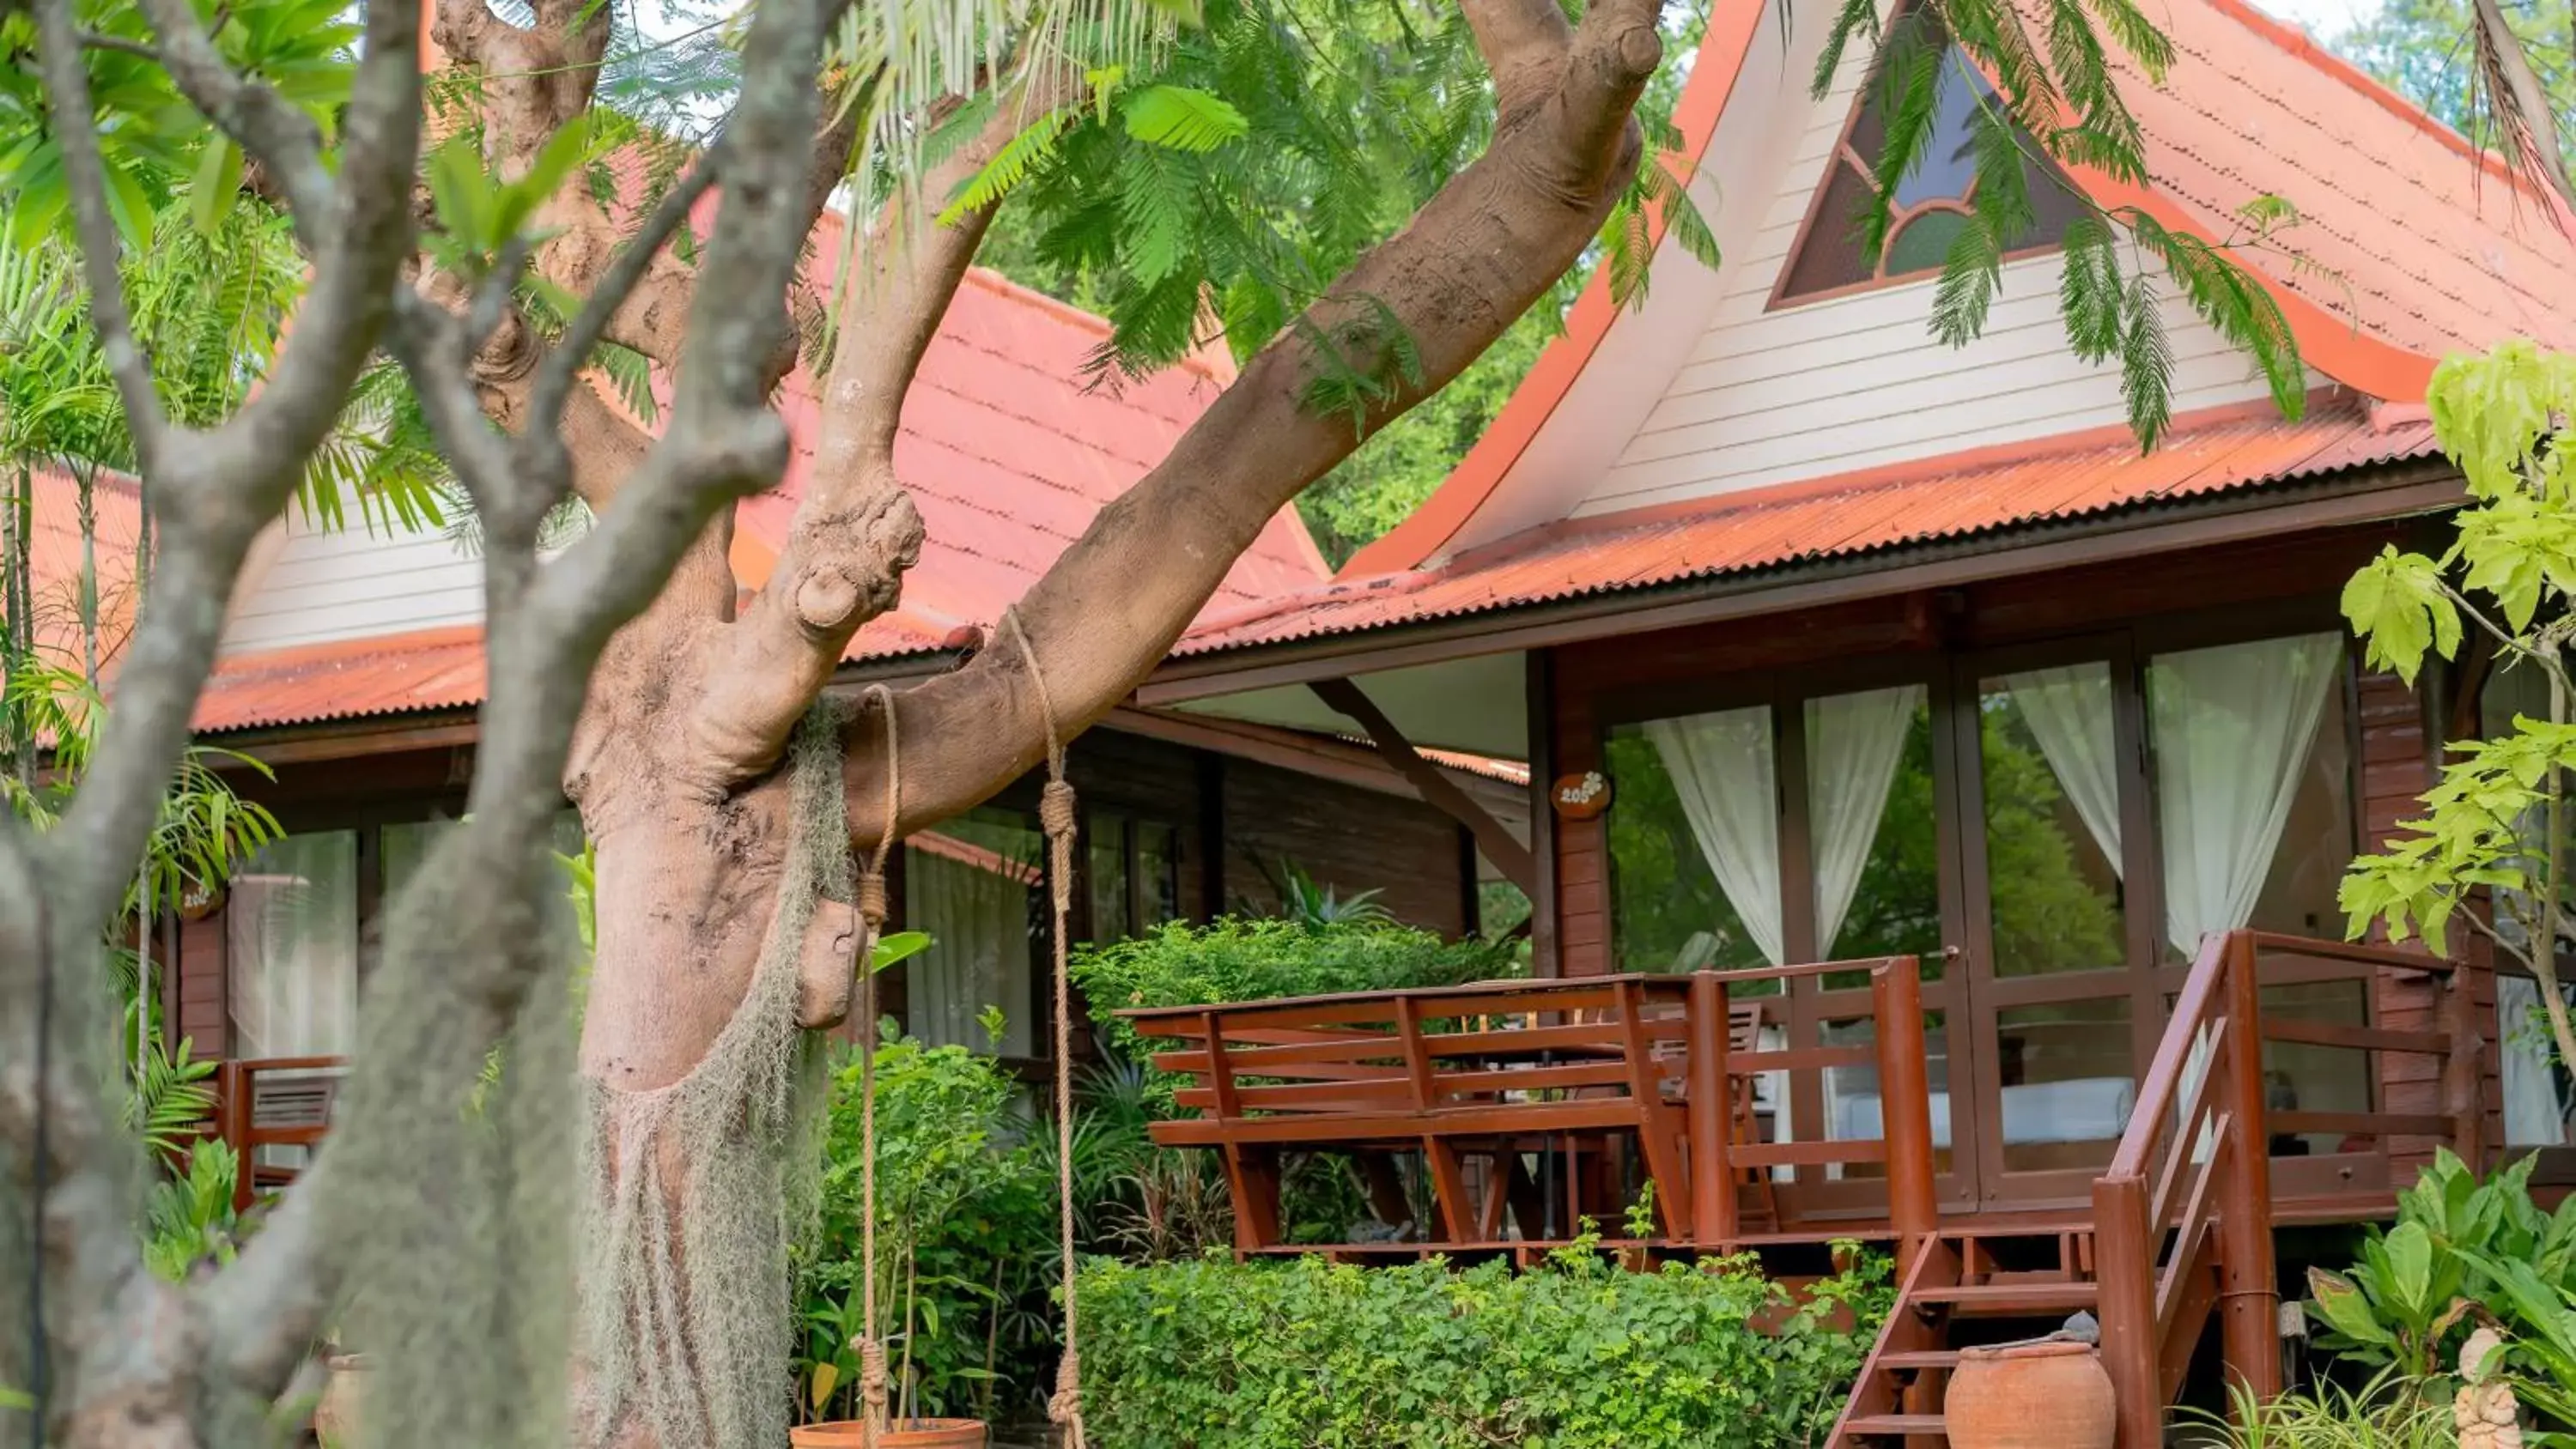 Garden view in Baan Duangkaew Resort